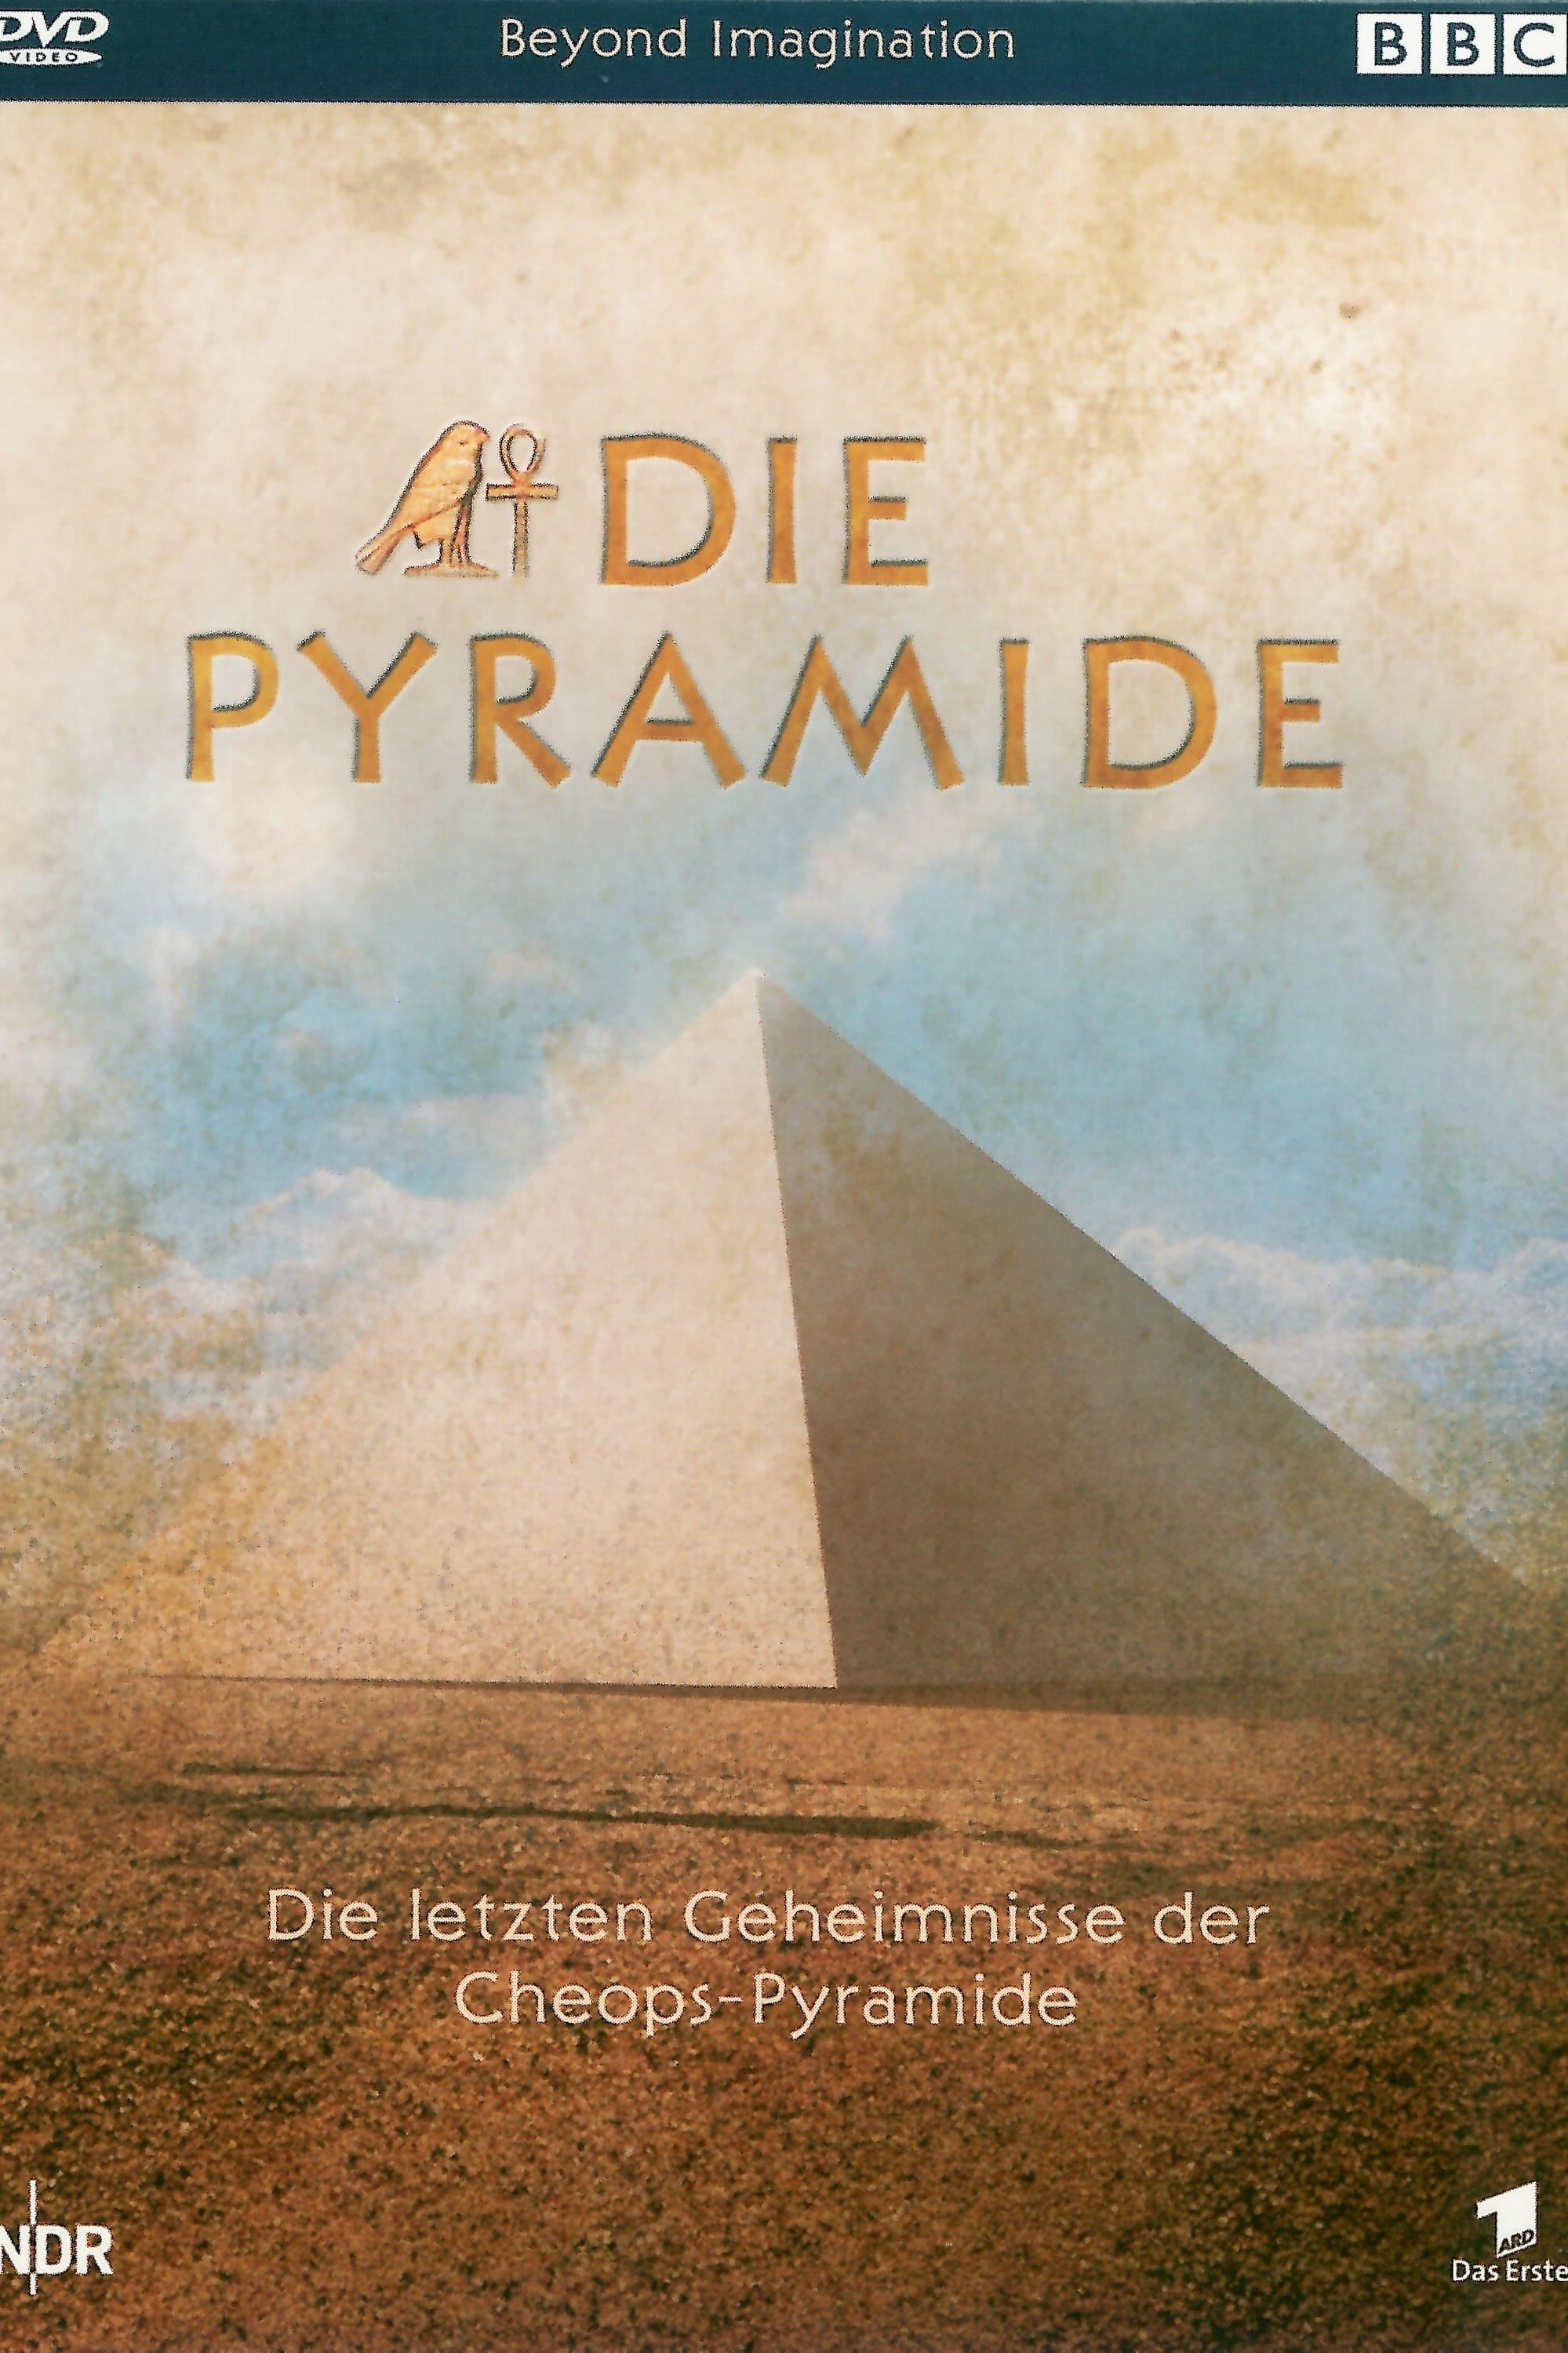 Die Pyramide - Die letzten Geheimnisse der Cheops-Pyramide poster